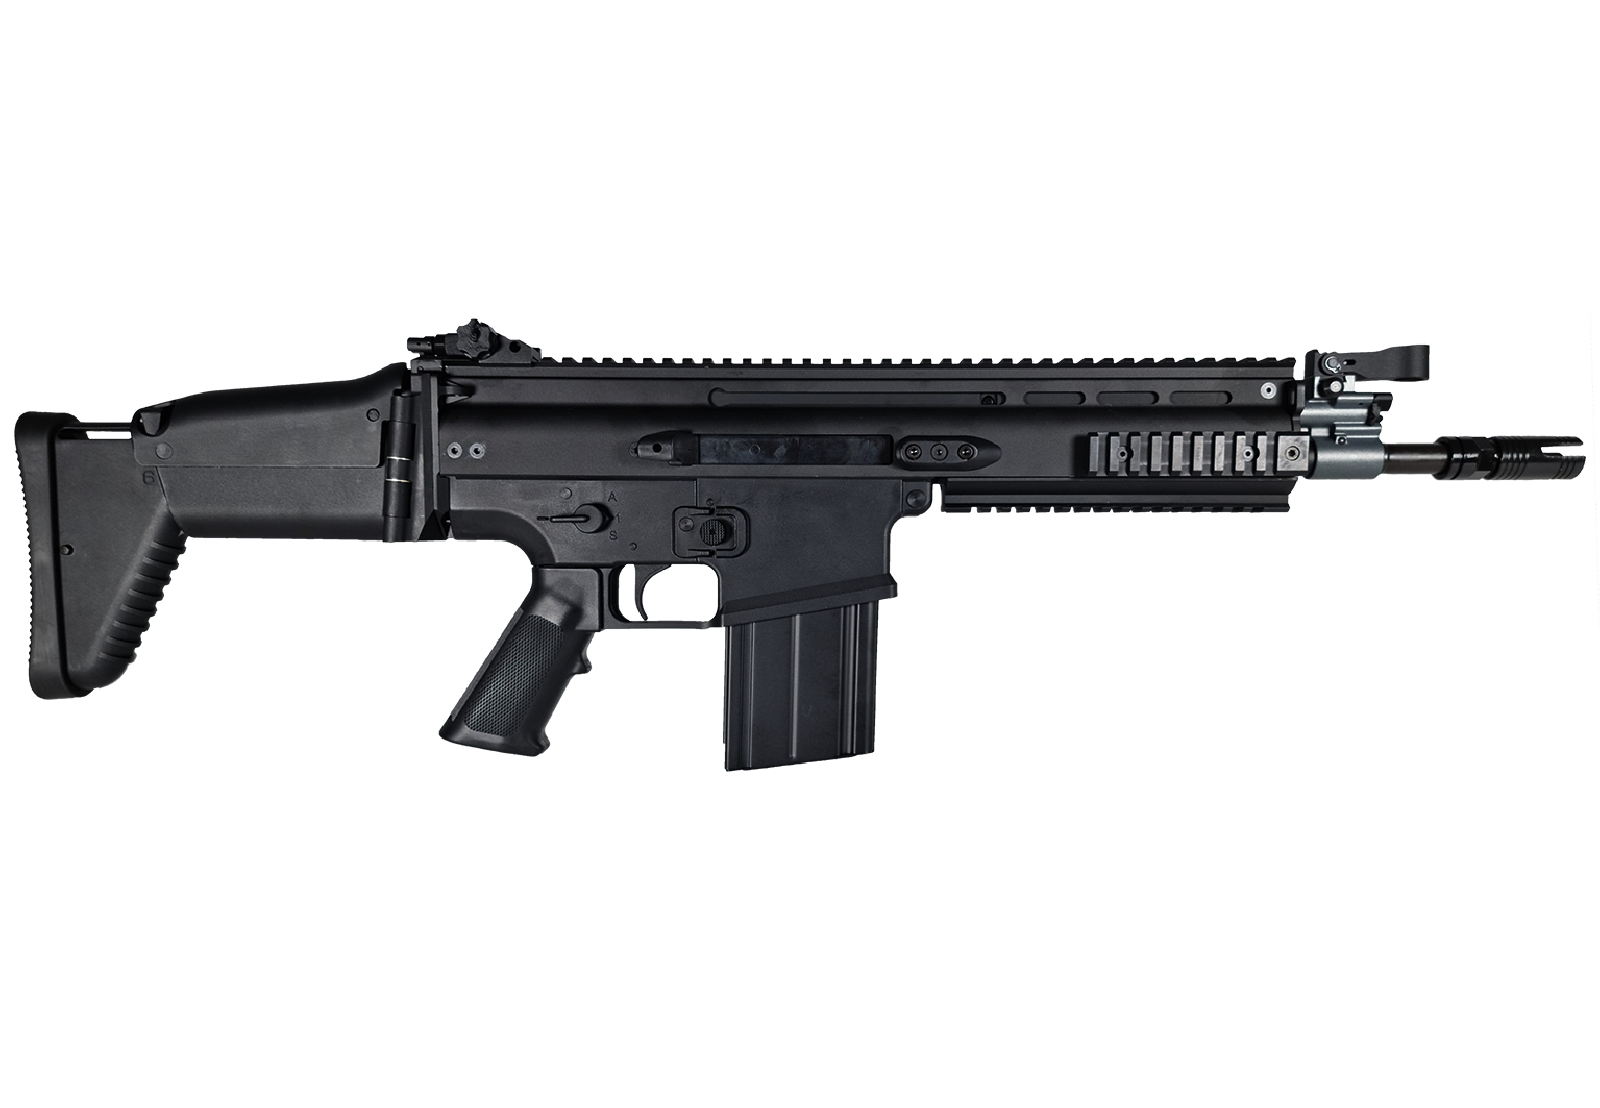 FN Scar-H CQC Black AEG